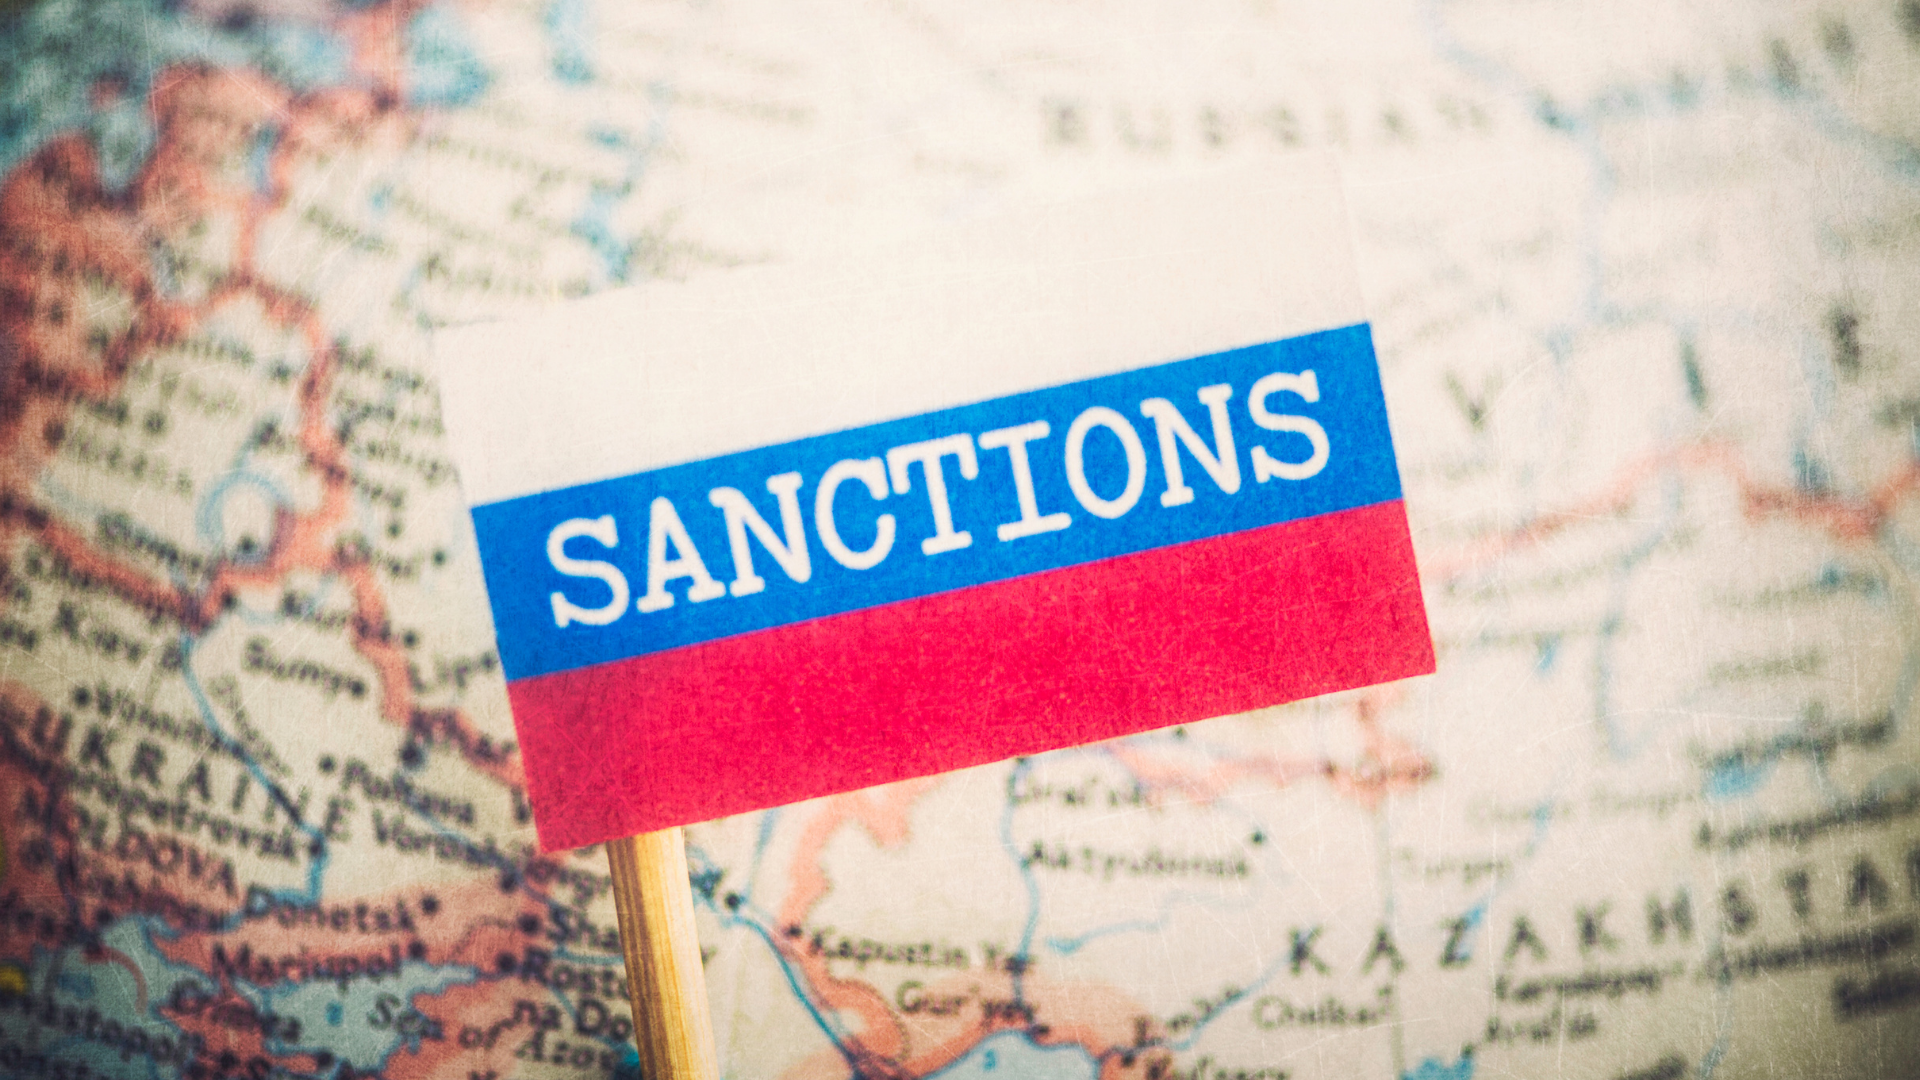 Quinto pacchetto di sanzioni contro la Russia: istruzioni applicative e divieto di accesso ai porti